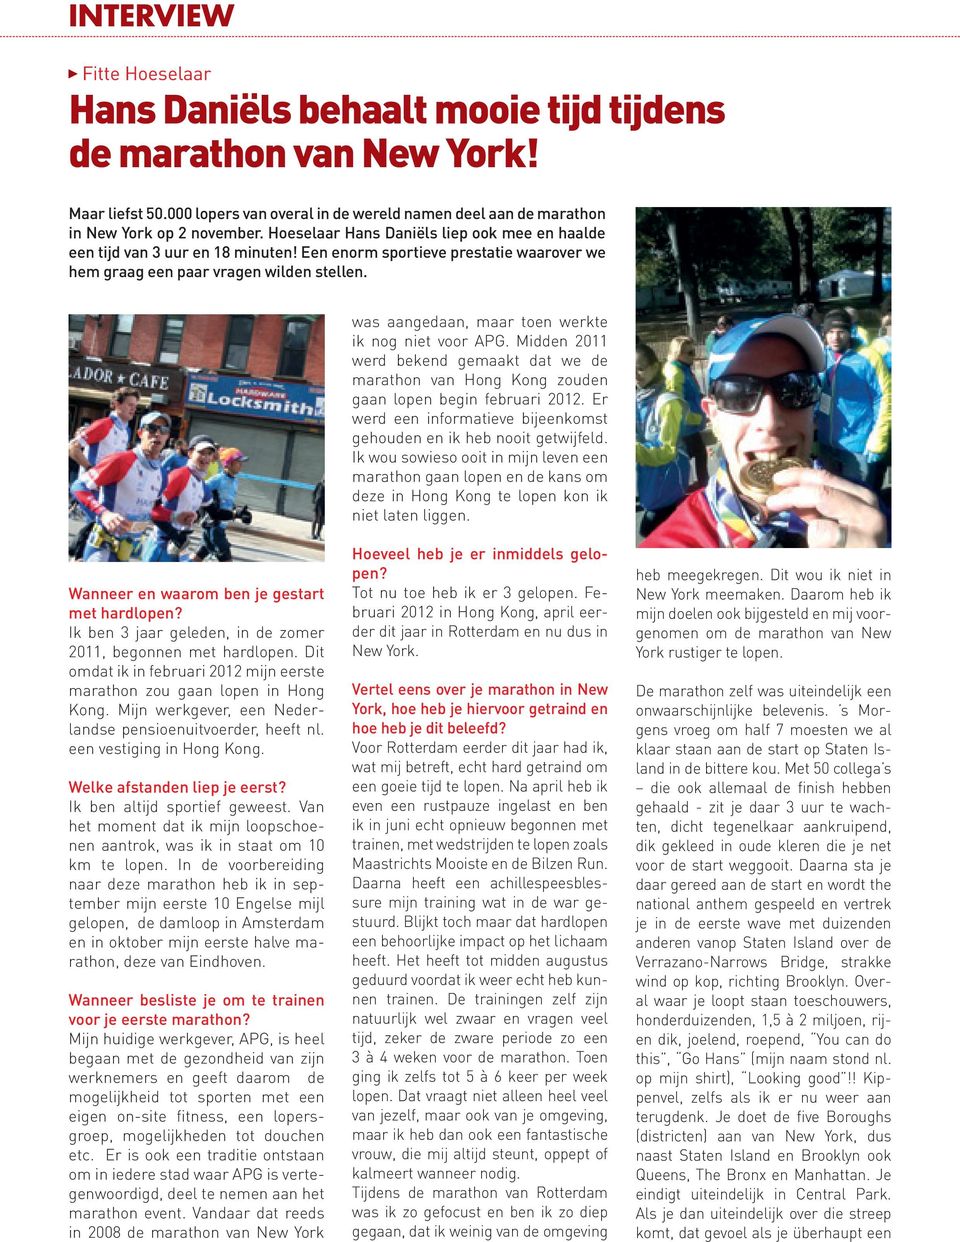 was aangedaan, maar toen werkte ik nog niet voor APG. Midden 2011 werd bekend gemaakt dat we de marathon van Hong Kong zouden gaan lopen begin februari 2012.